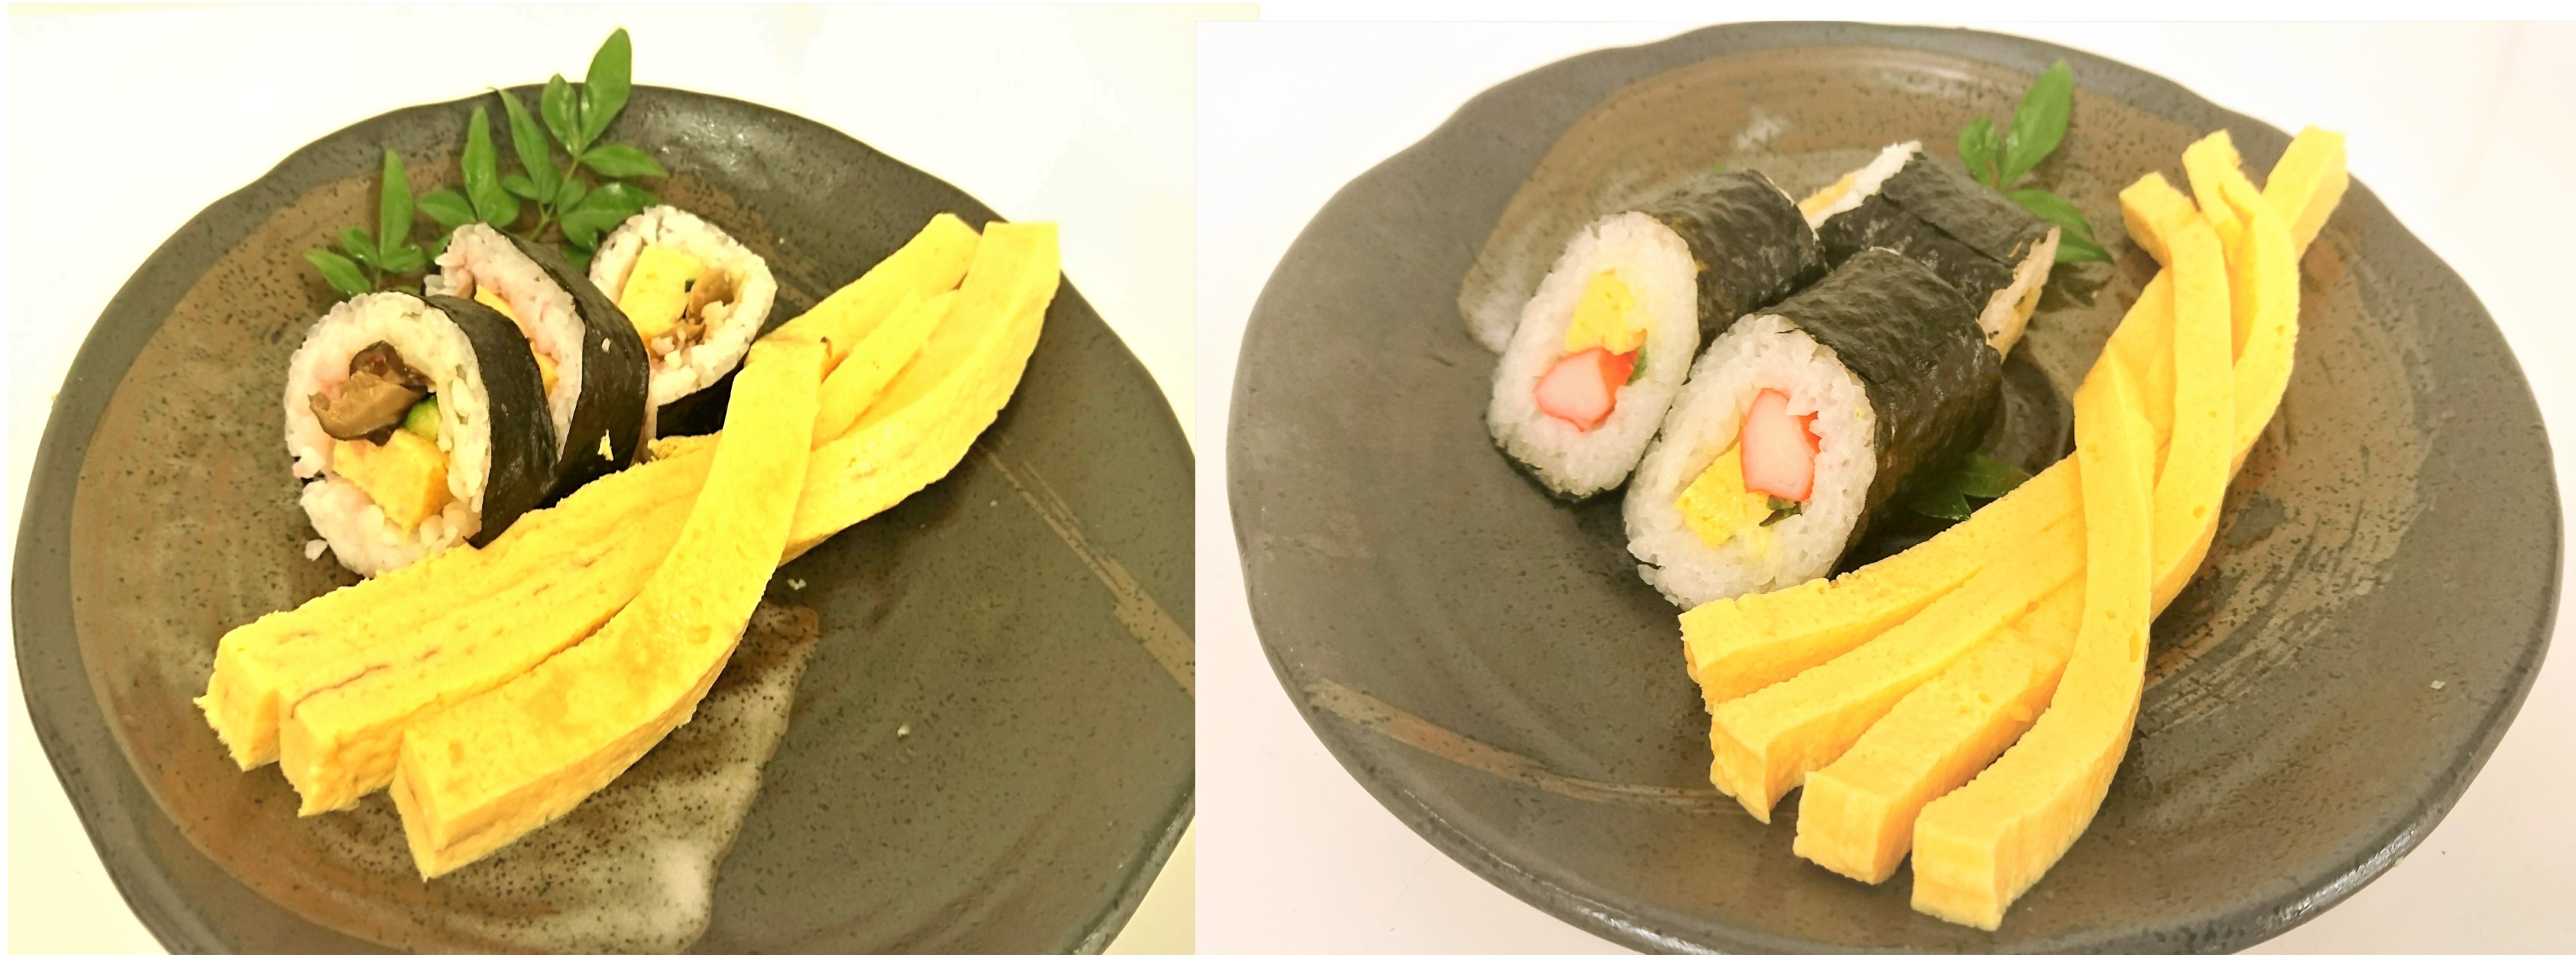 寿司用厚焼きカット